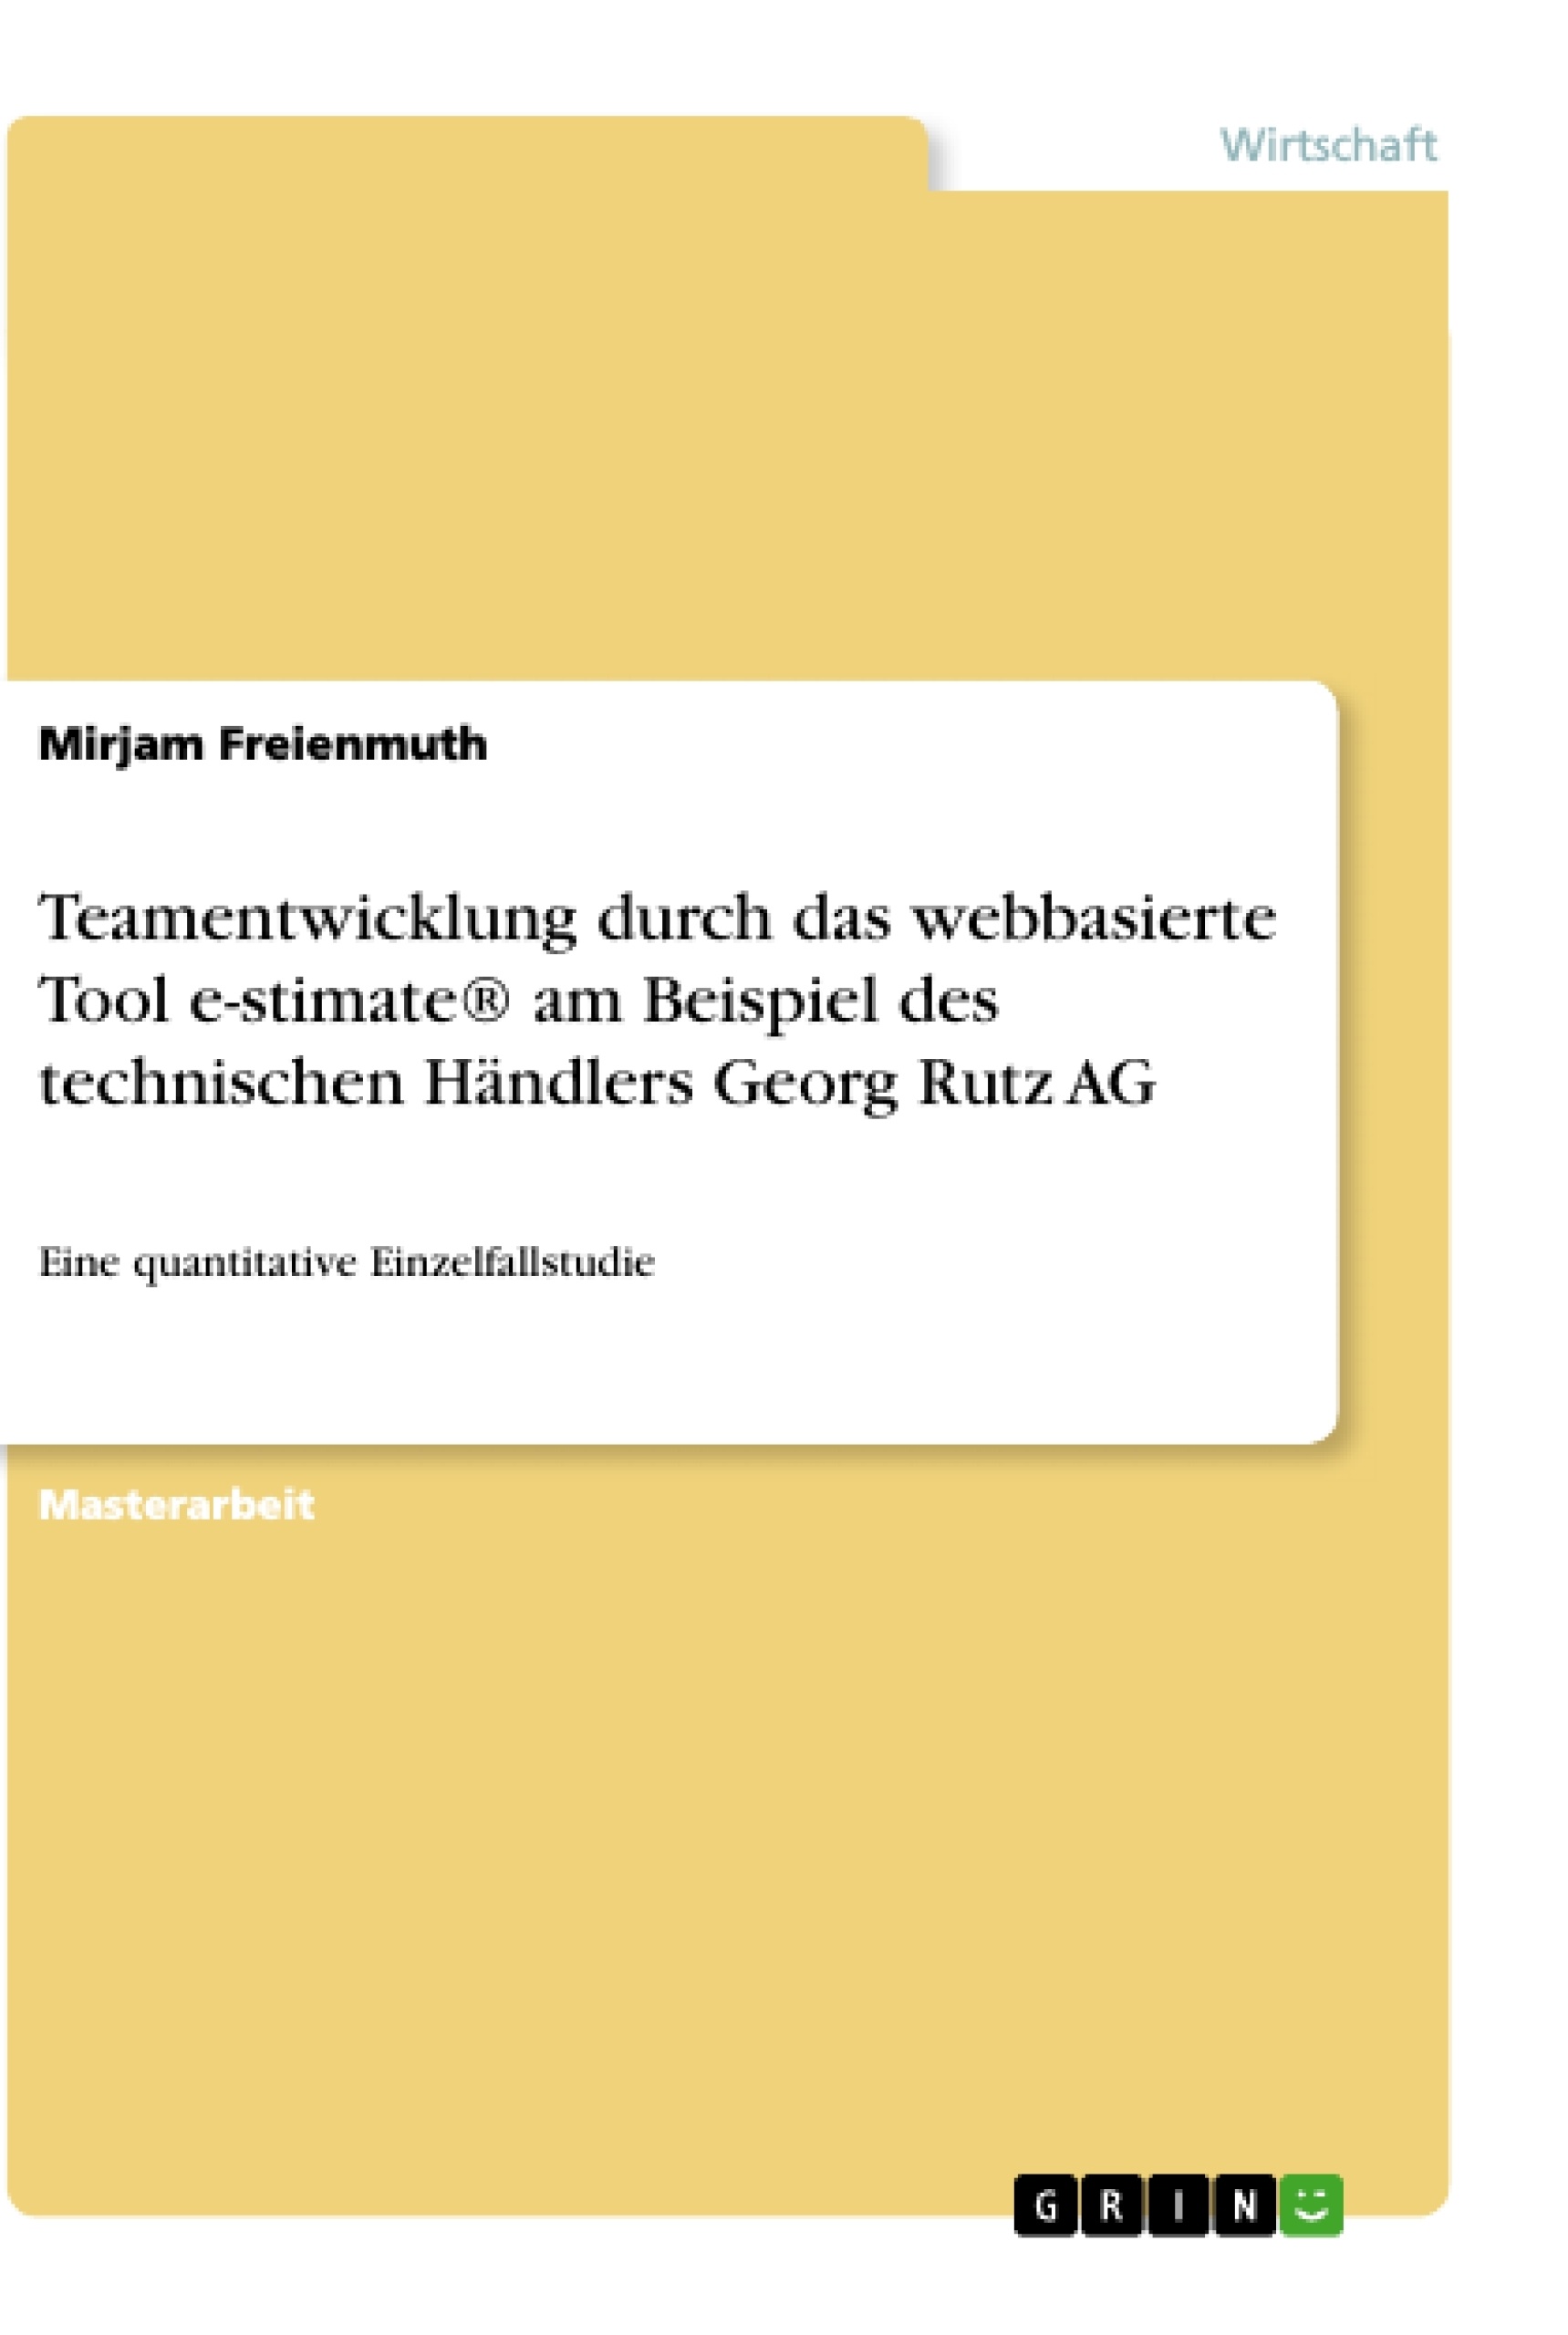 Título: Teamentwicklung durch das webbasierte Tool e-stimate® am Beispiel des technischen Händlers Georg Rutz AG